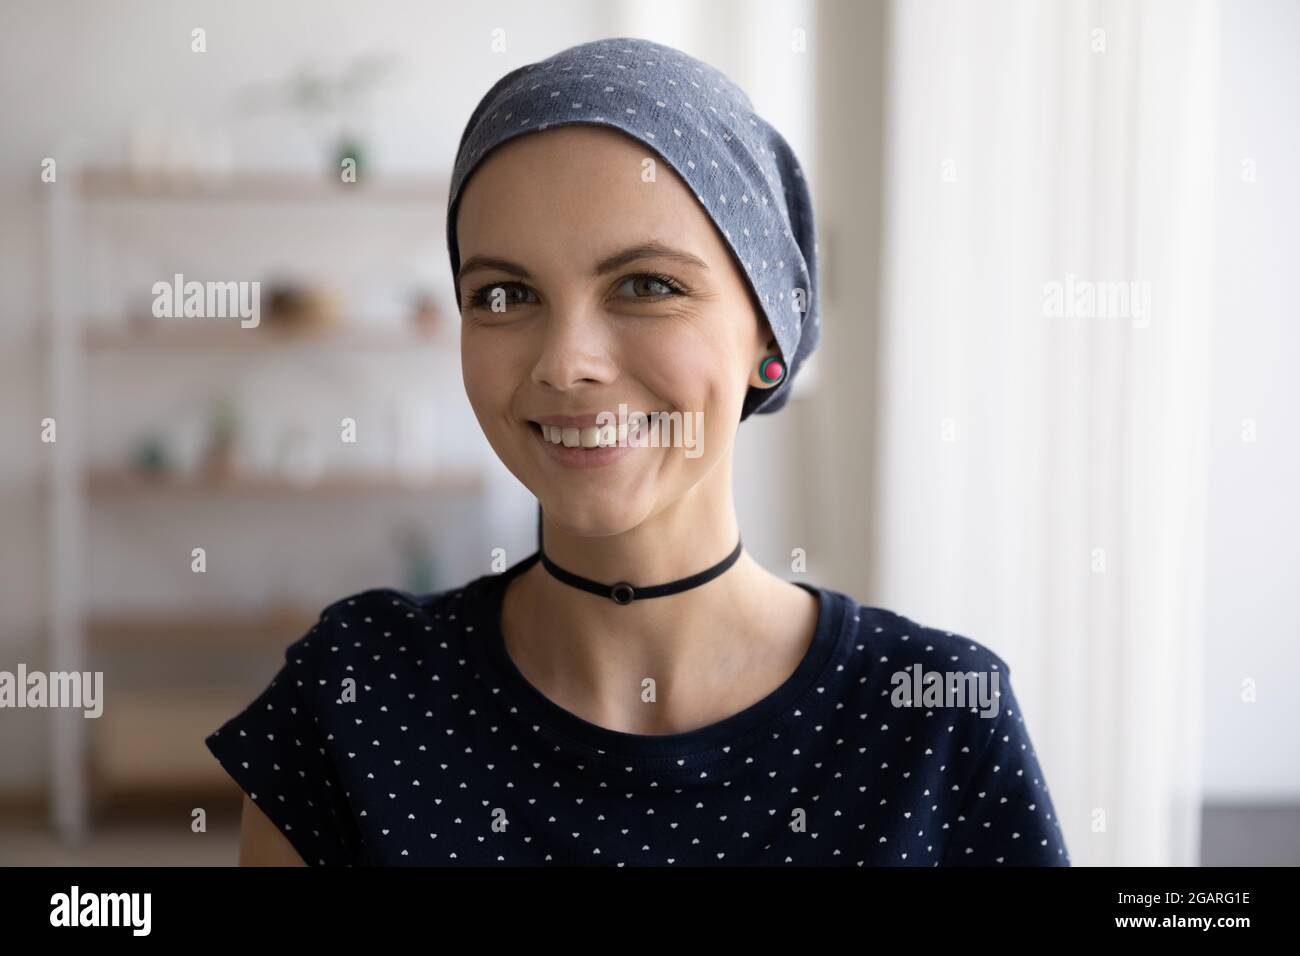 Portrait d'une femme chauve souriante avec foulard sur la tête Photo Stock  - Alamy